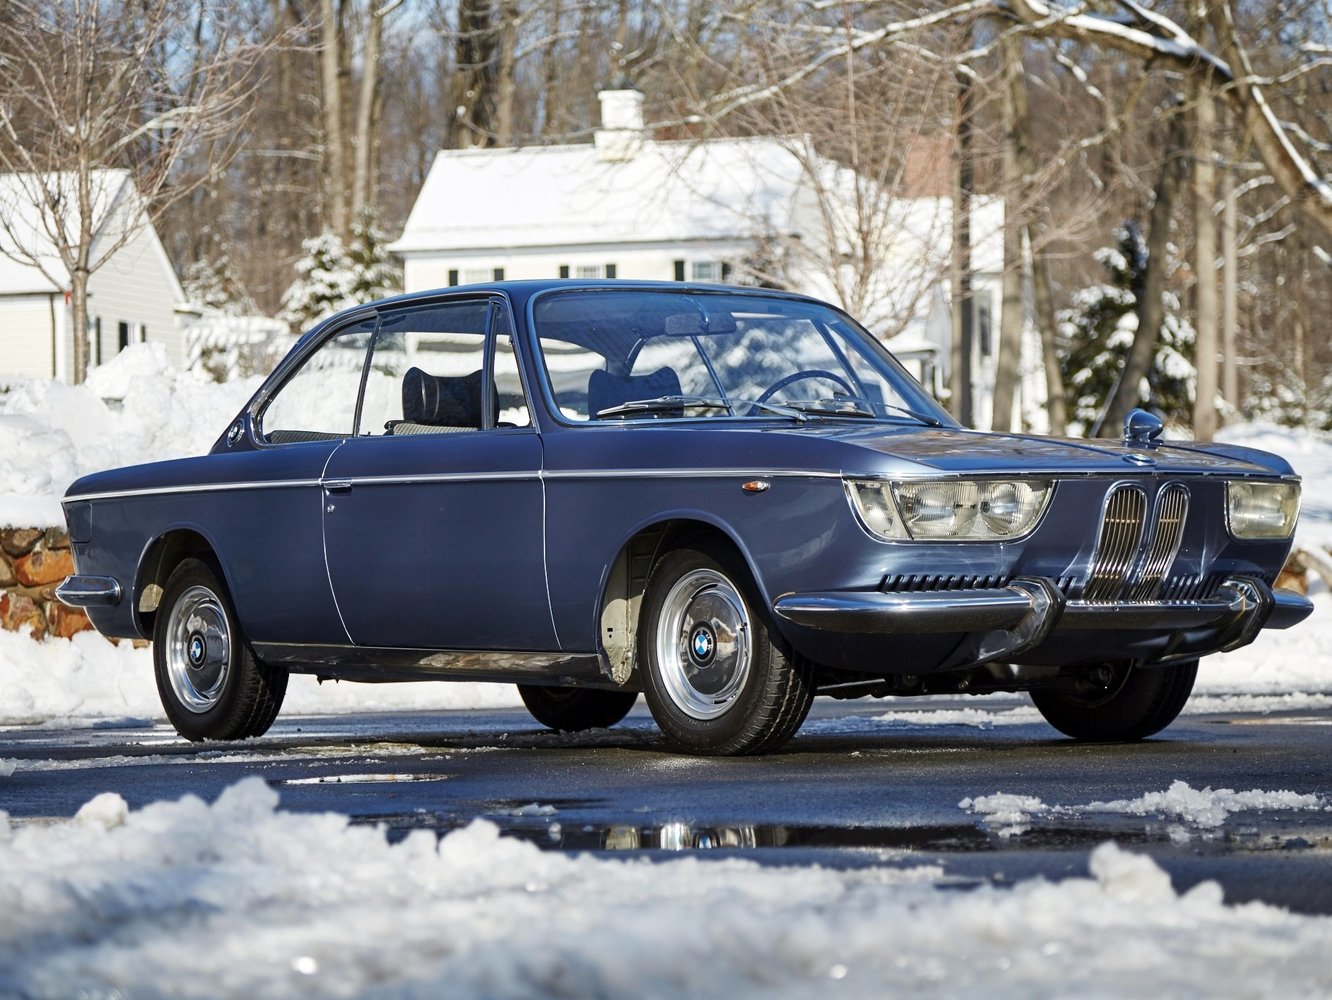 BMW New Class 1965 - 1969